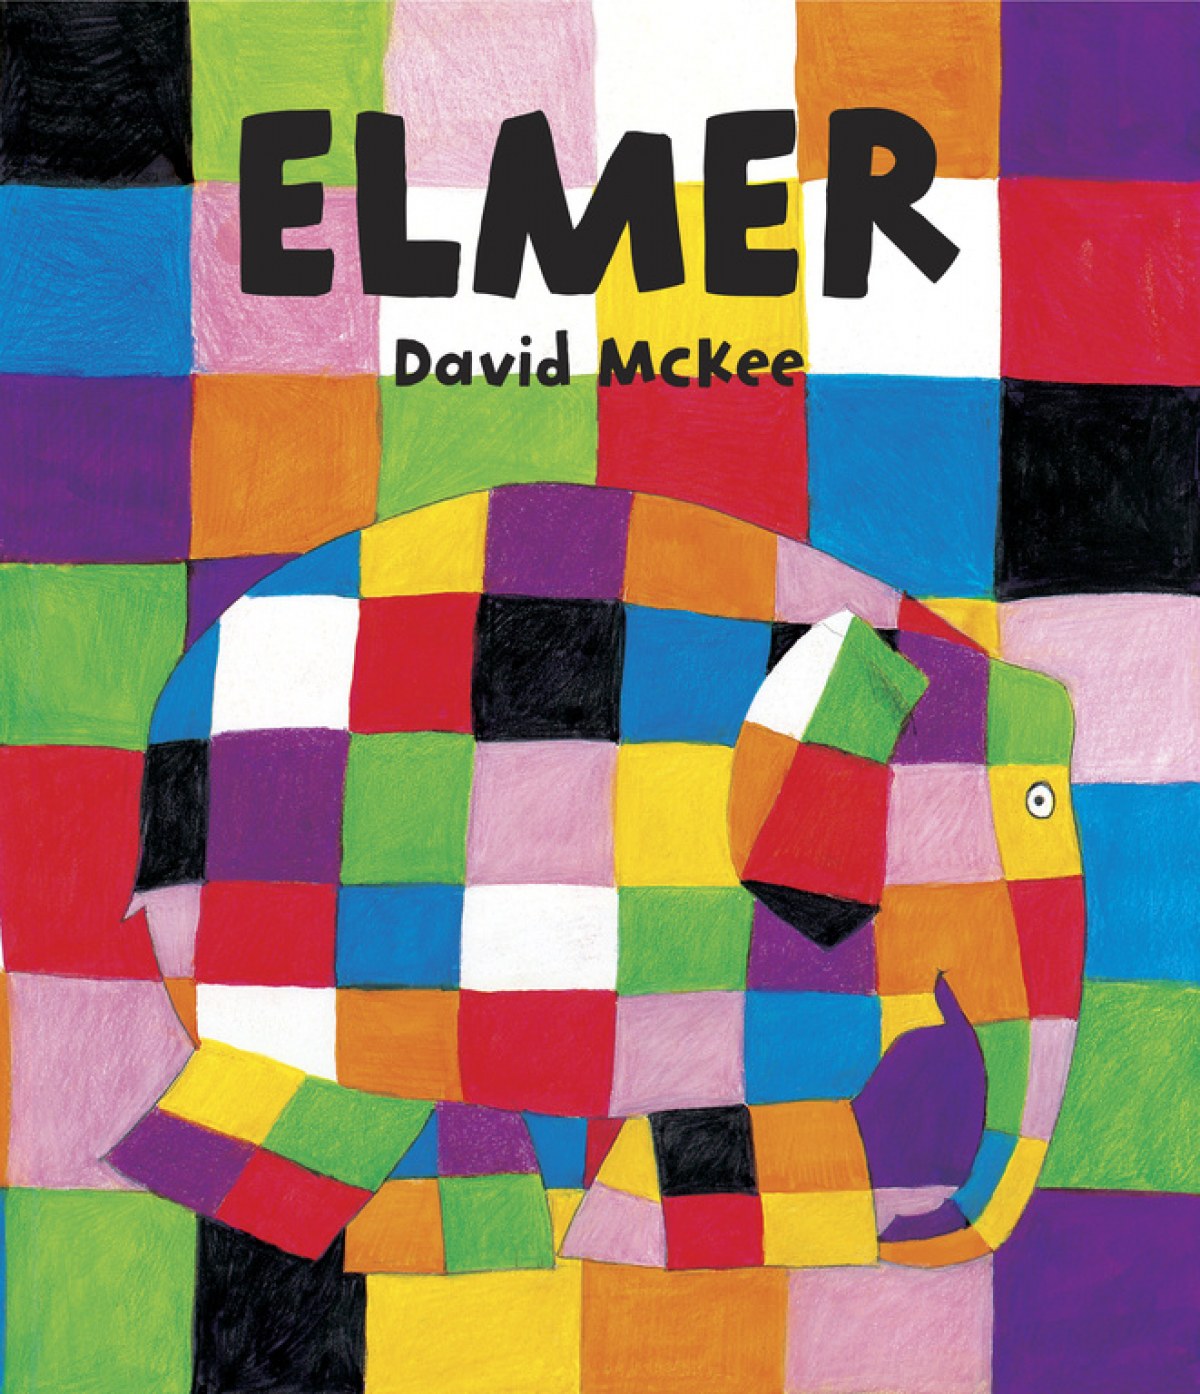 Elmer contiene un juego de memoria - Mckee, David